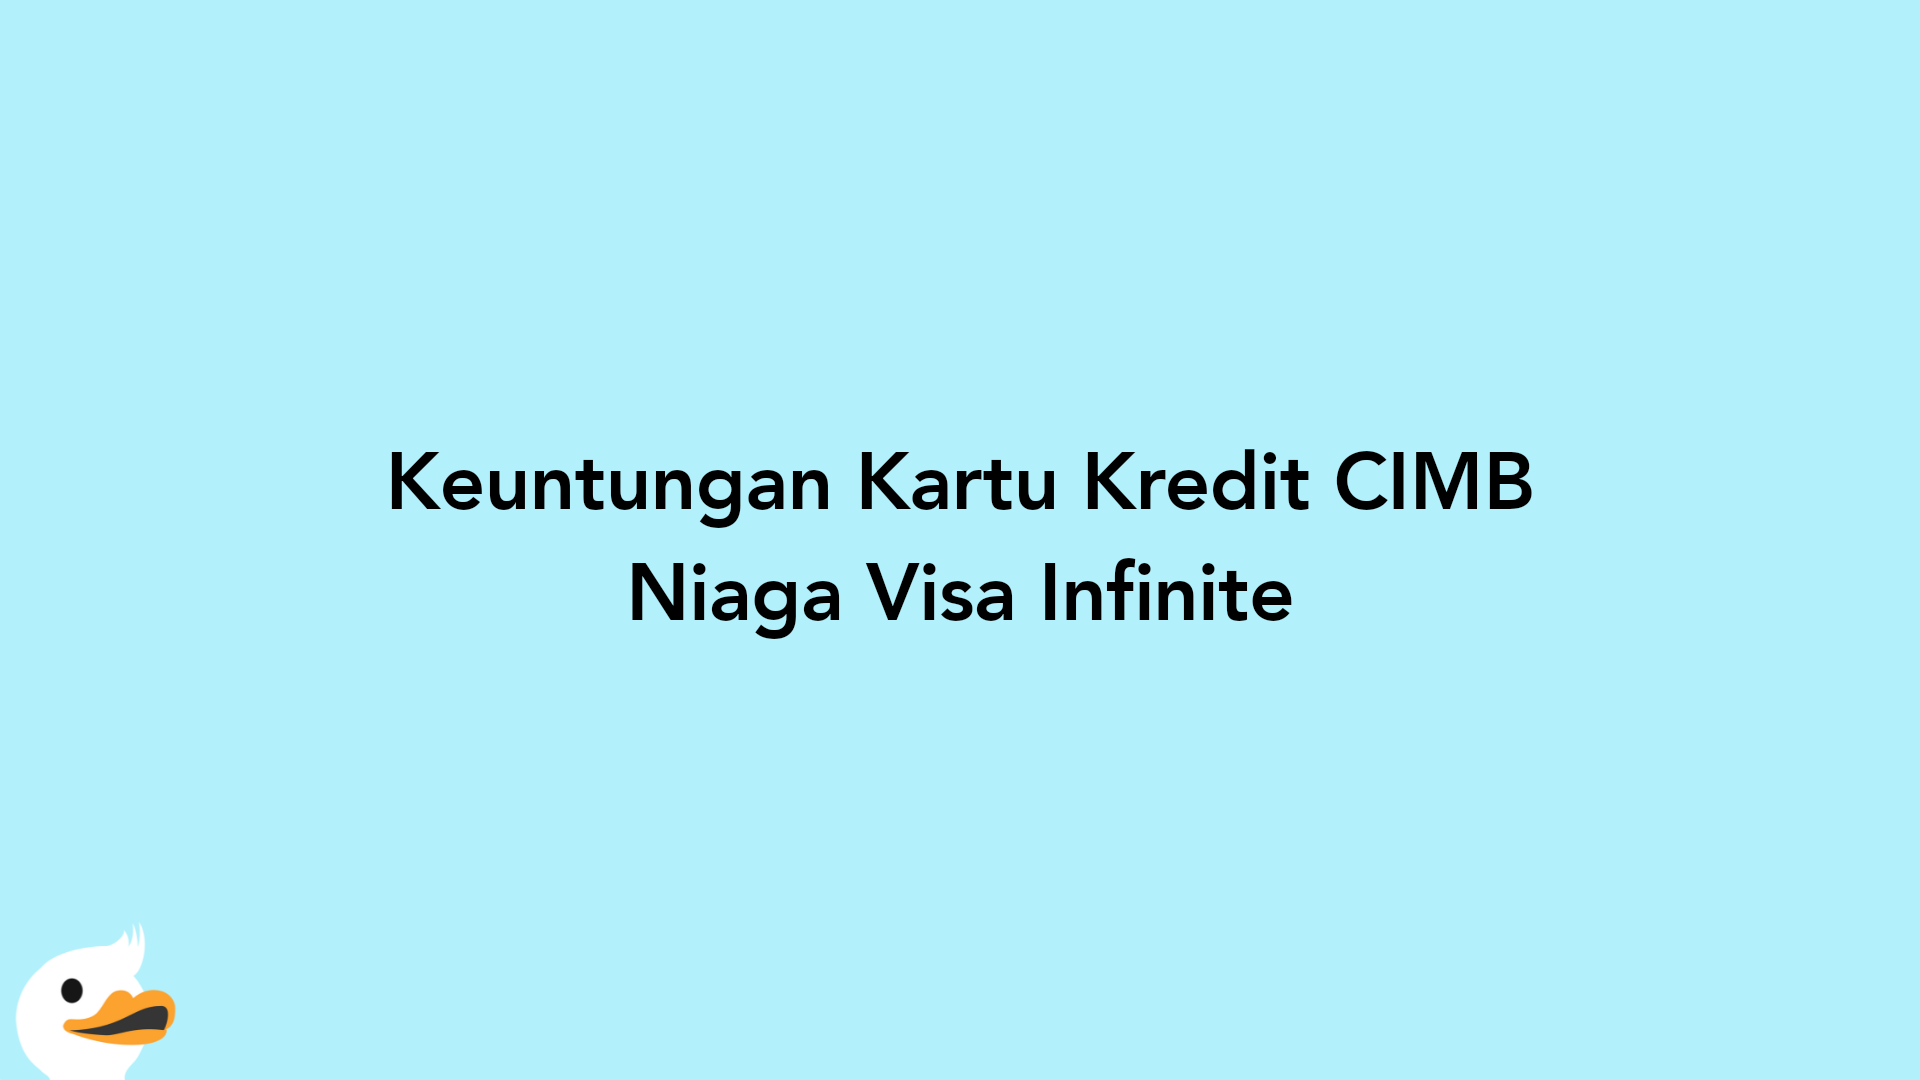 Keuntungan Kartu Kredit CIMB Niaga Visa Infinite